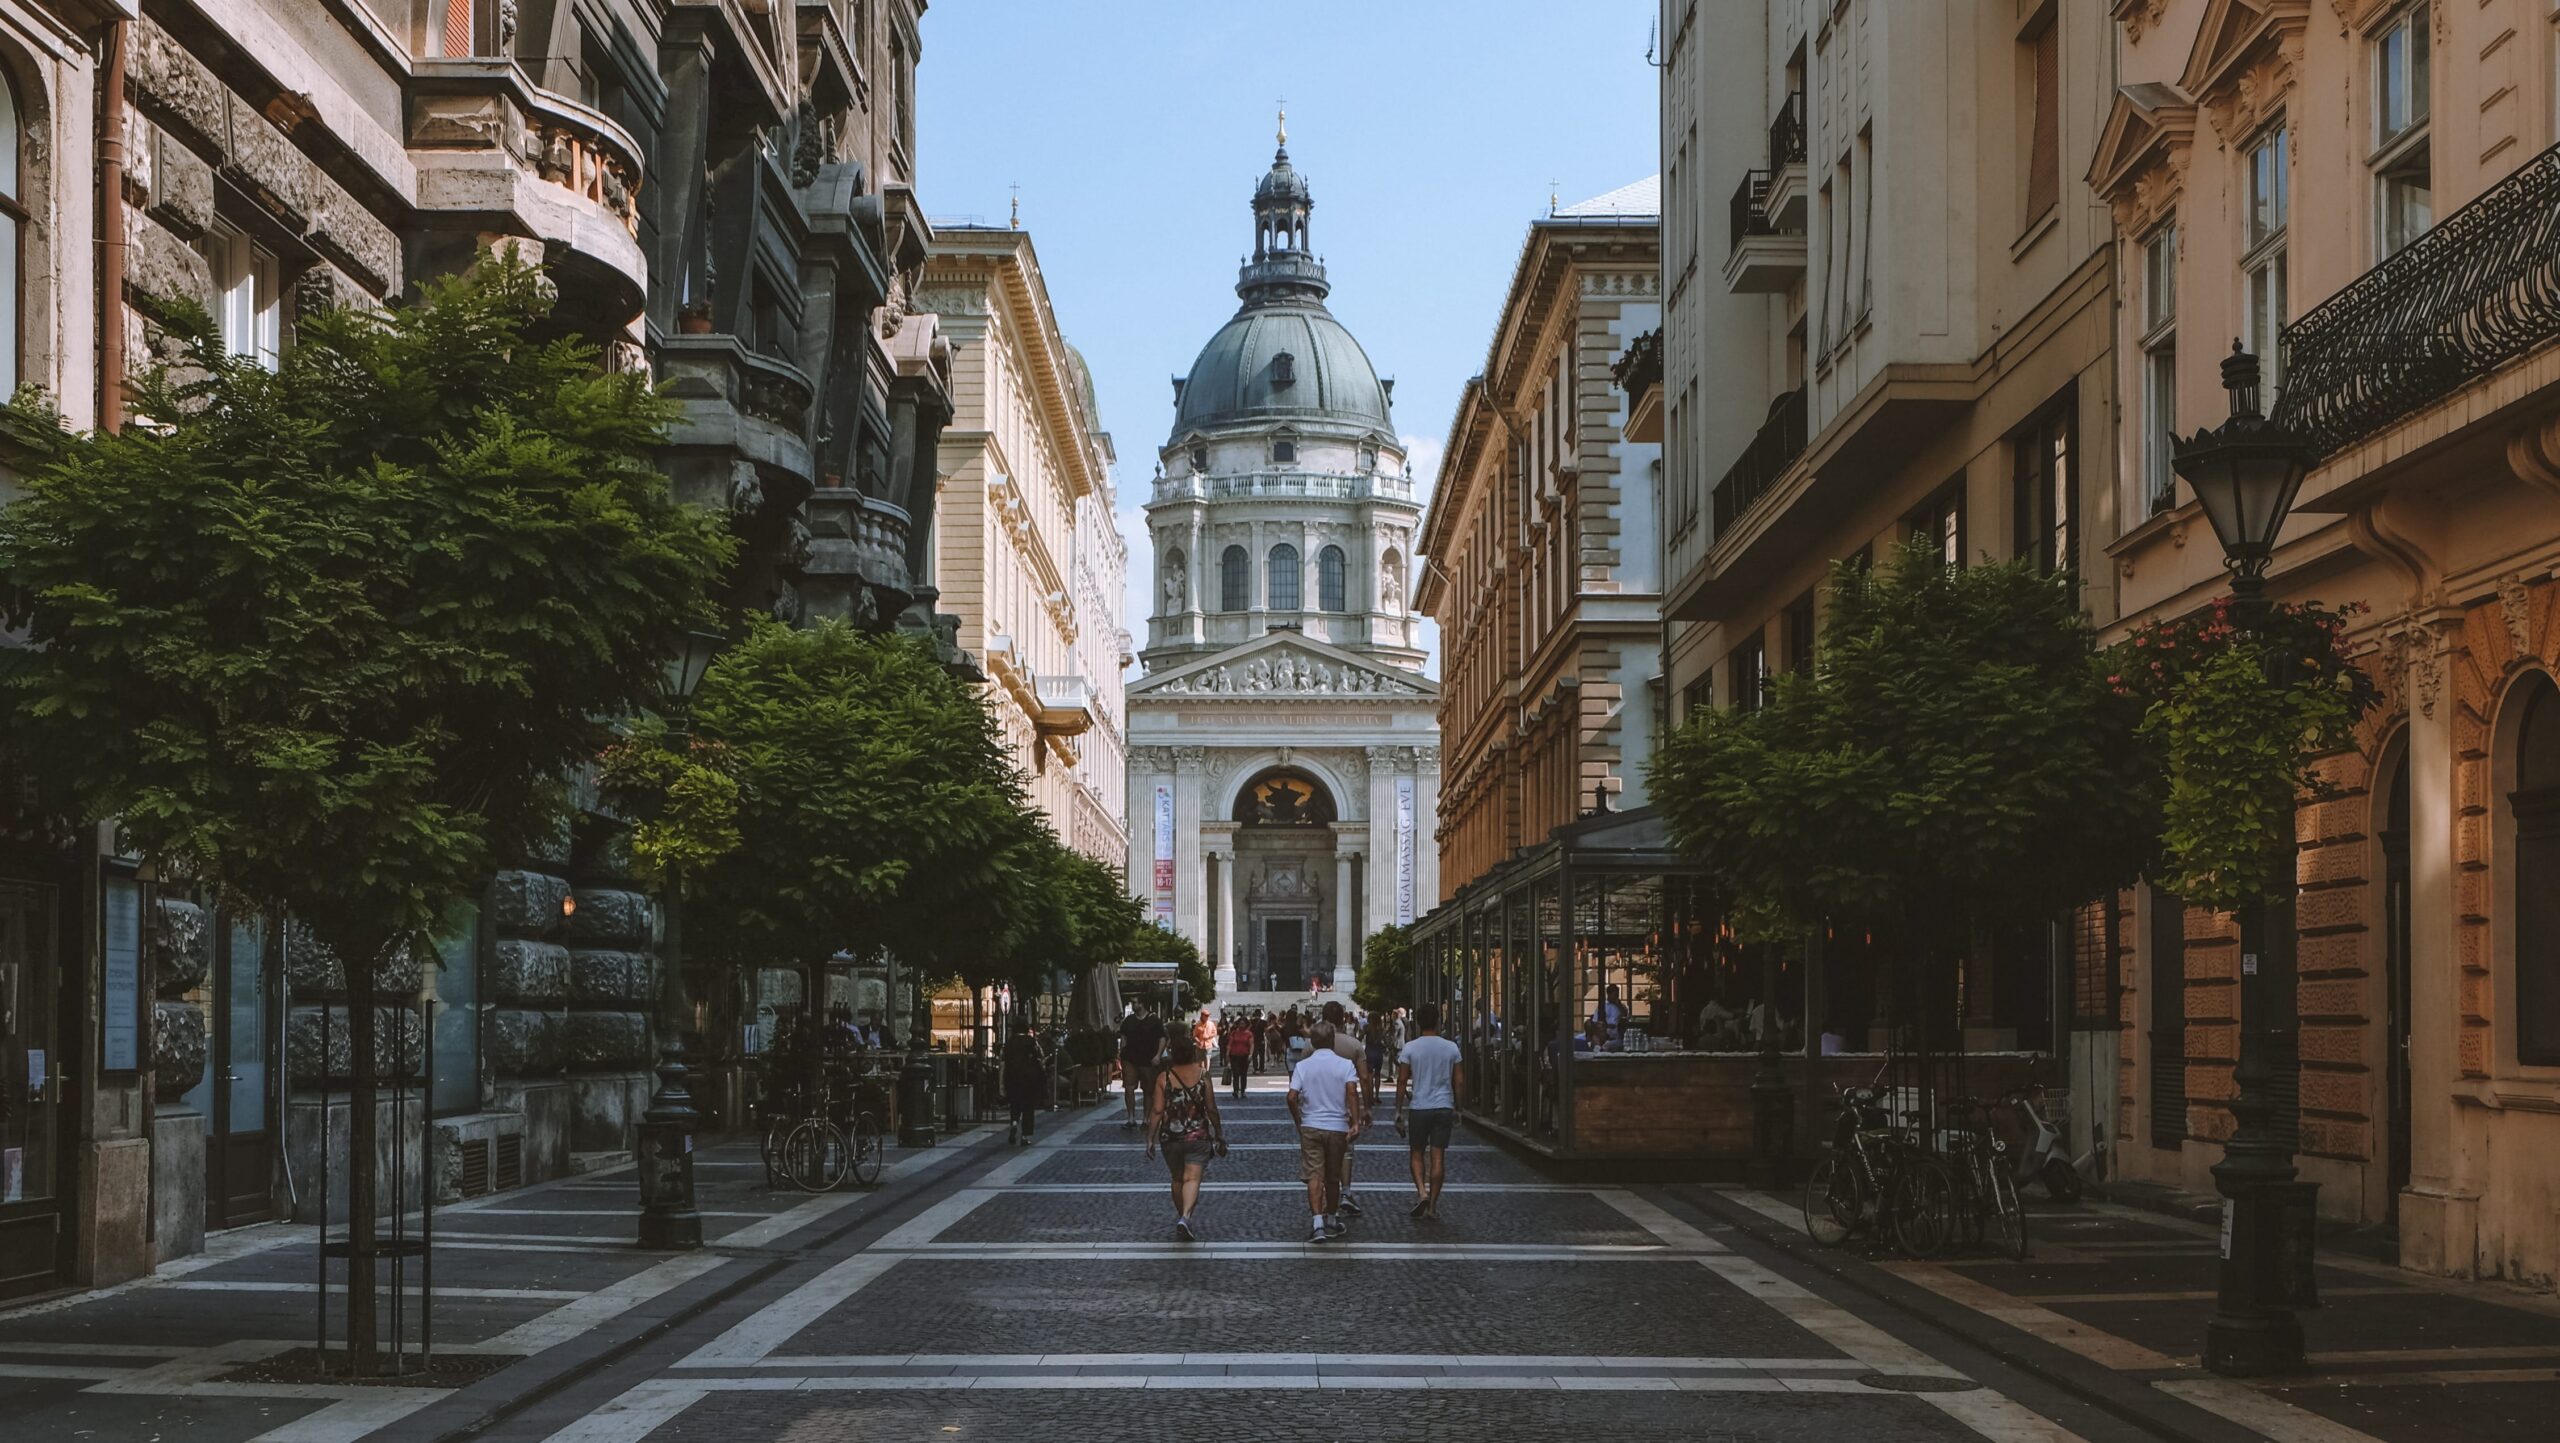 Budapest, St. Stephen's Basilica, Szent István tér, Hungary